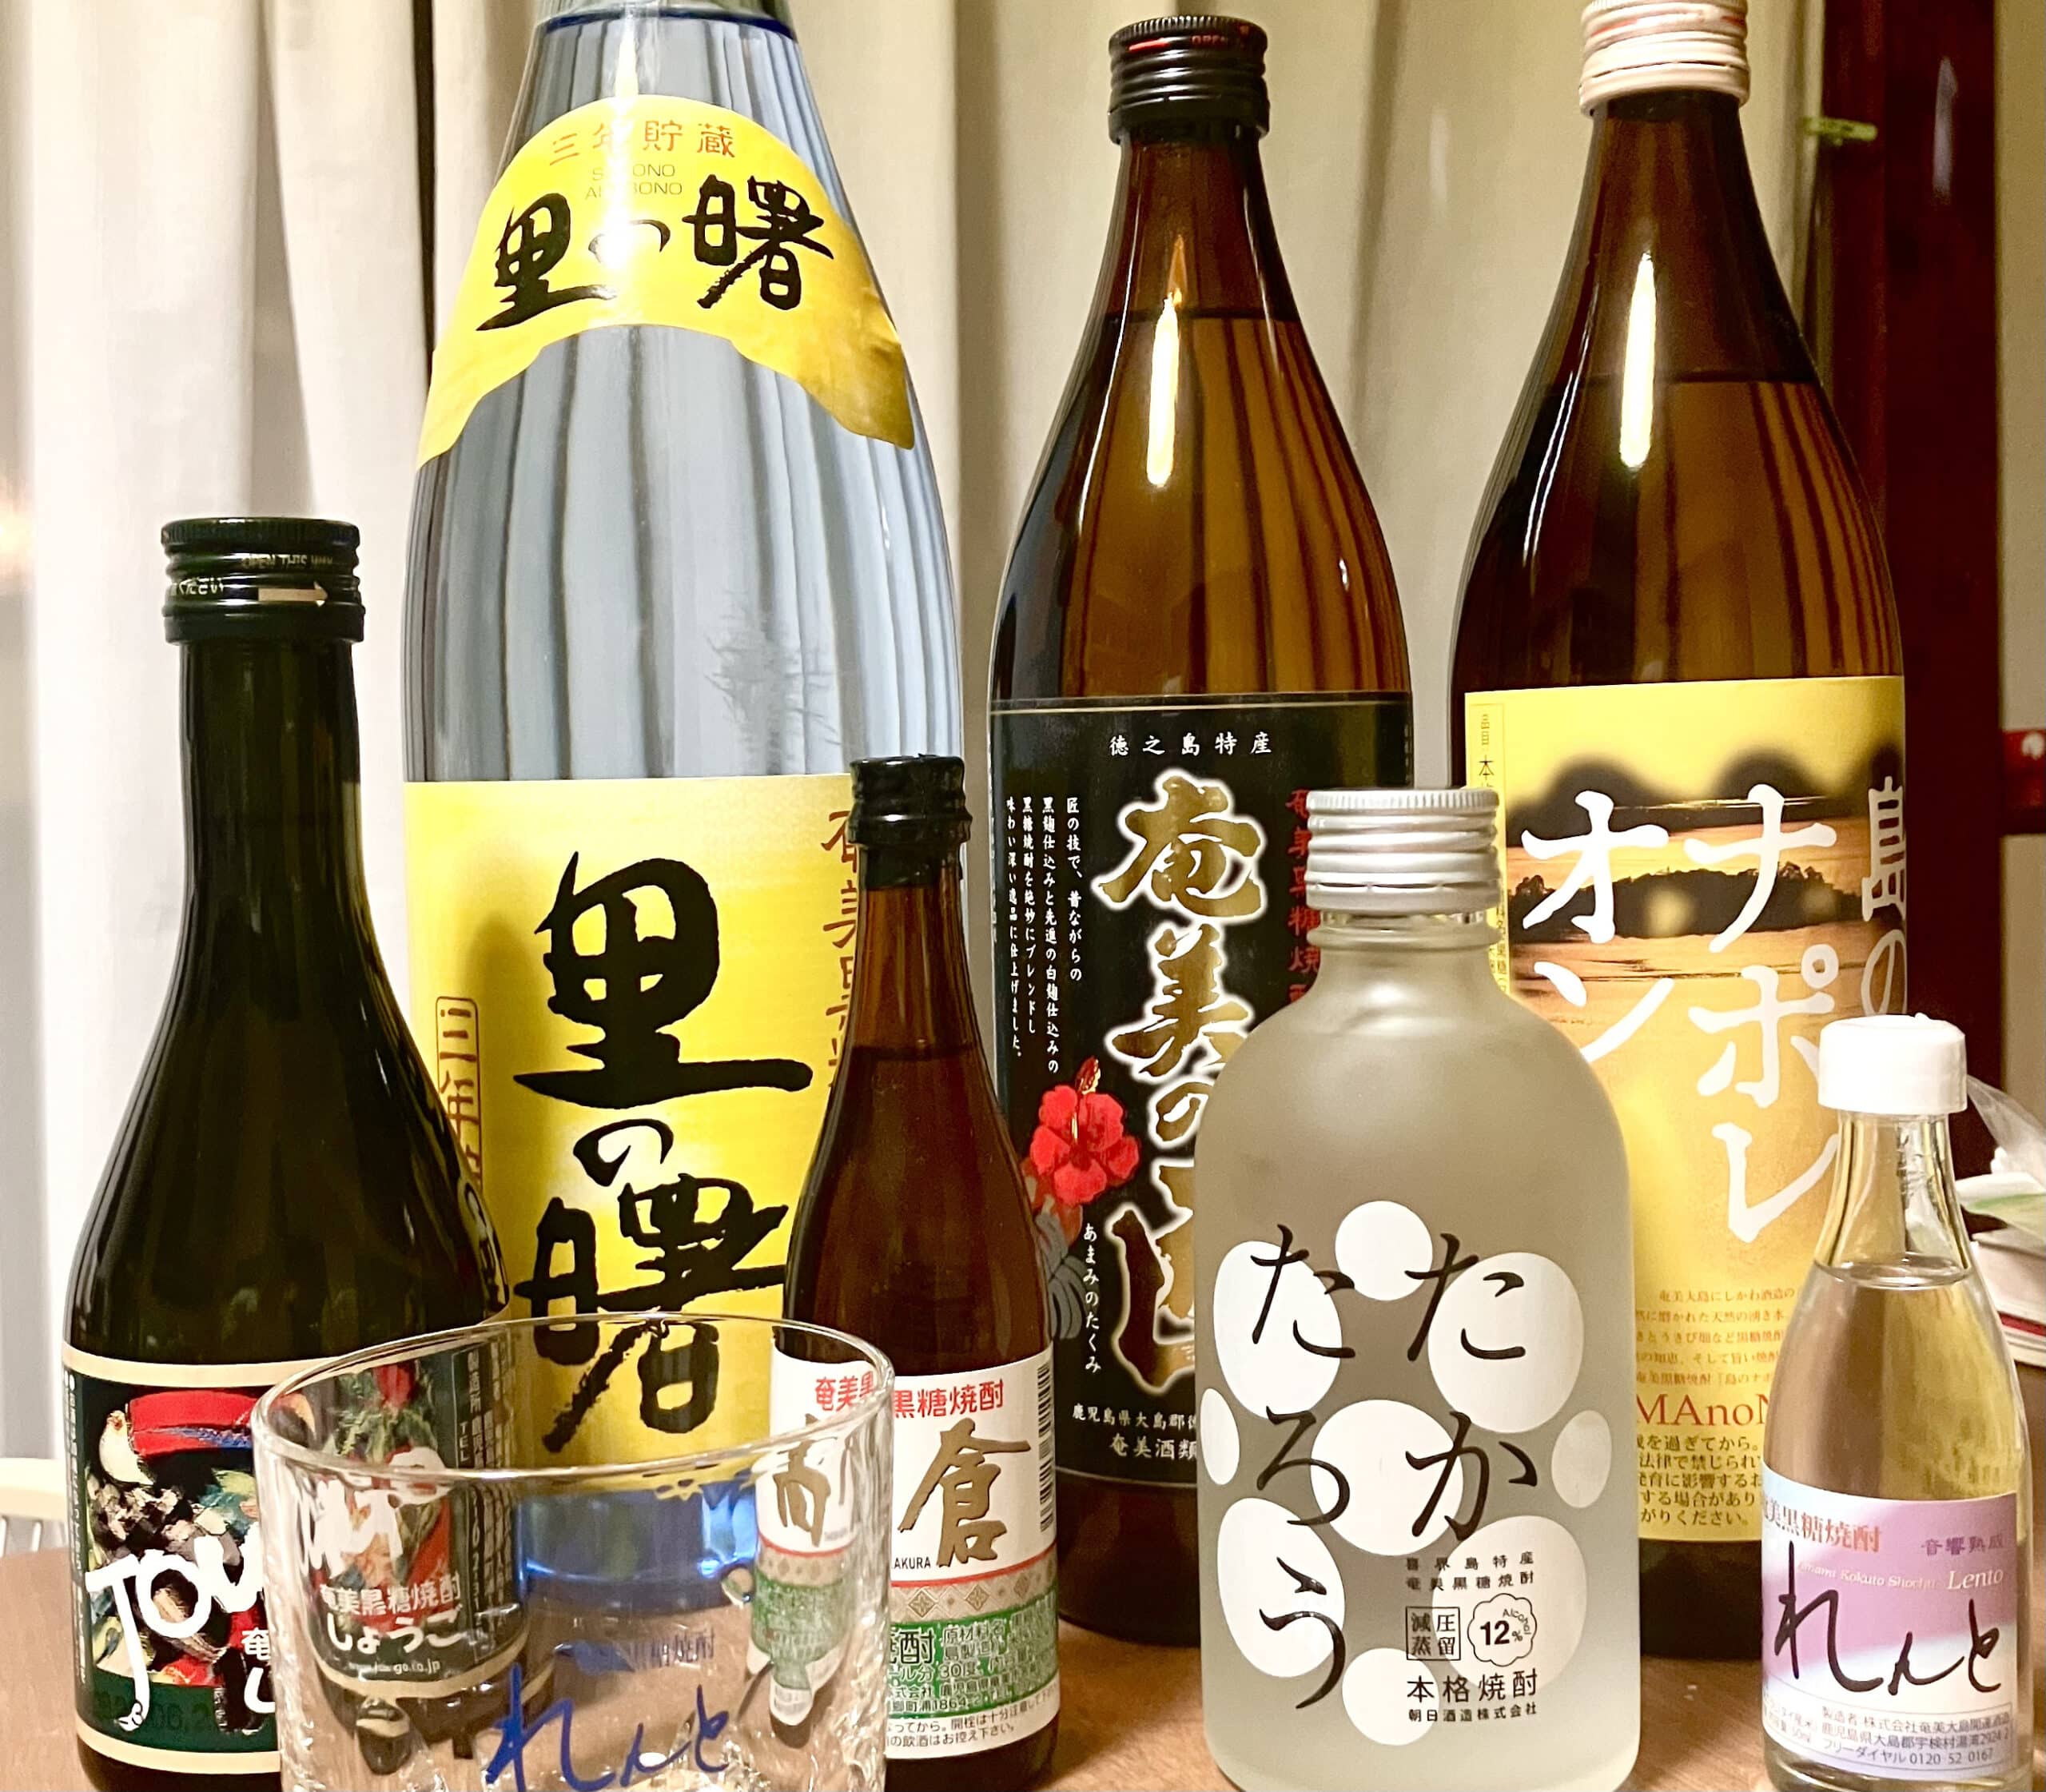 Bottles of Kokuto Shochu